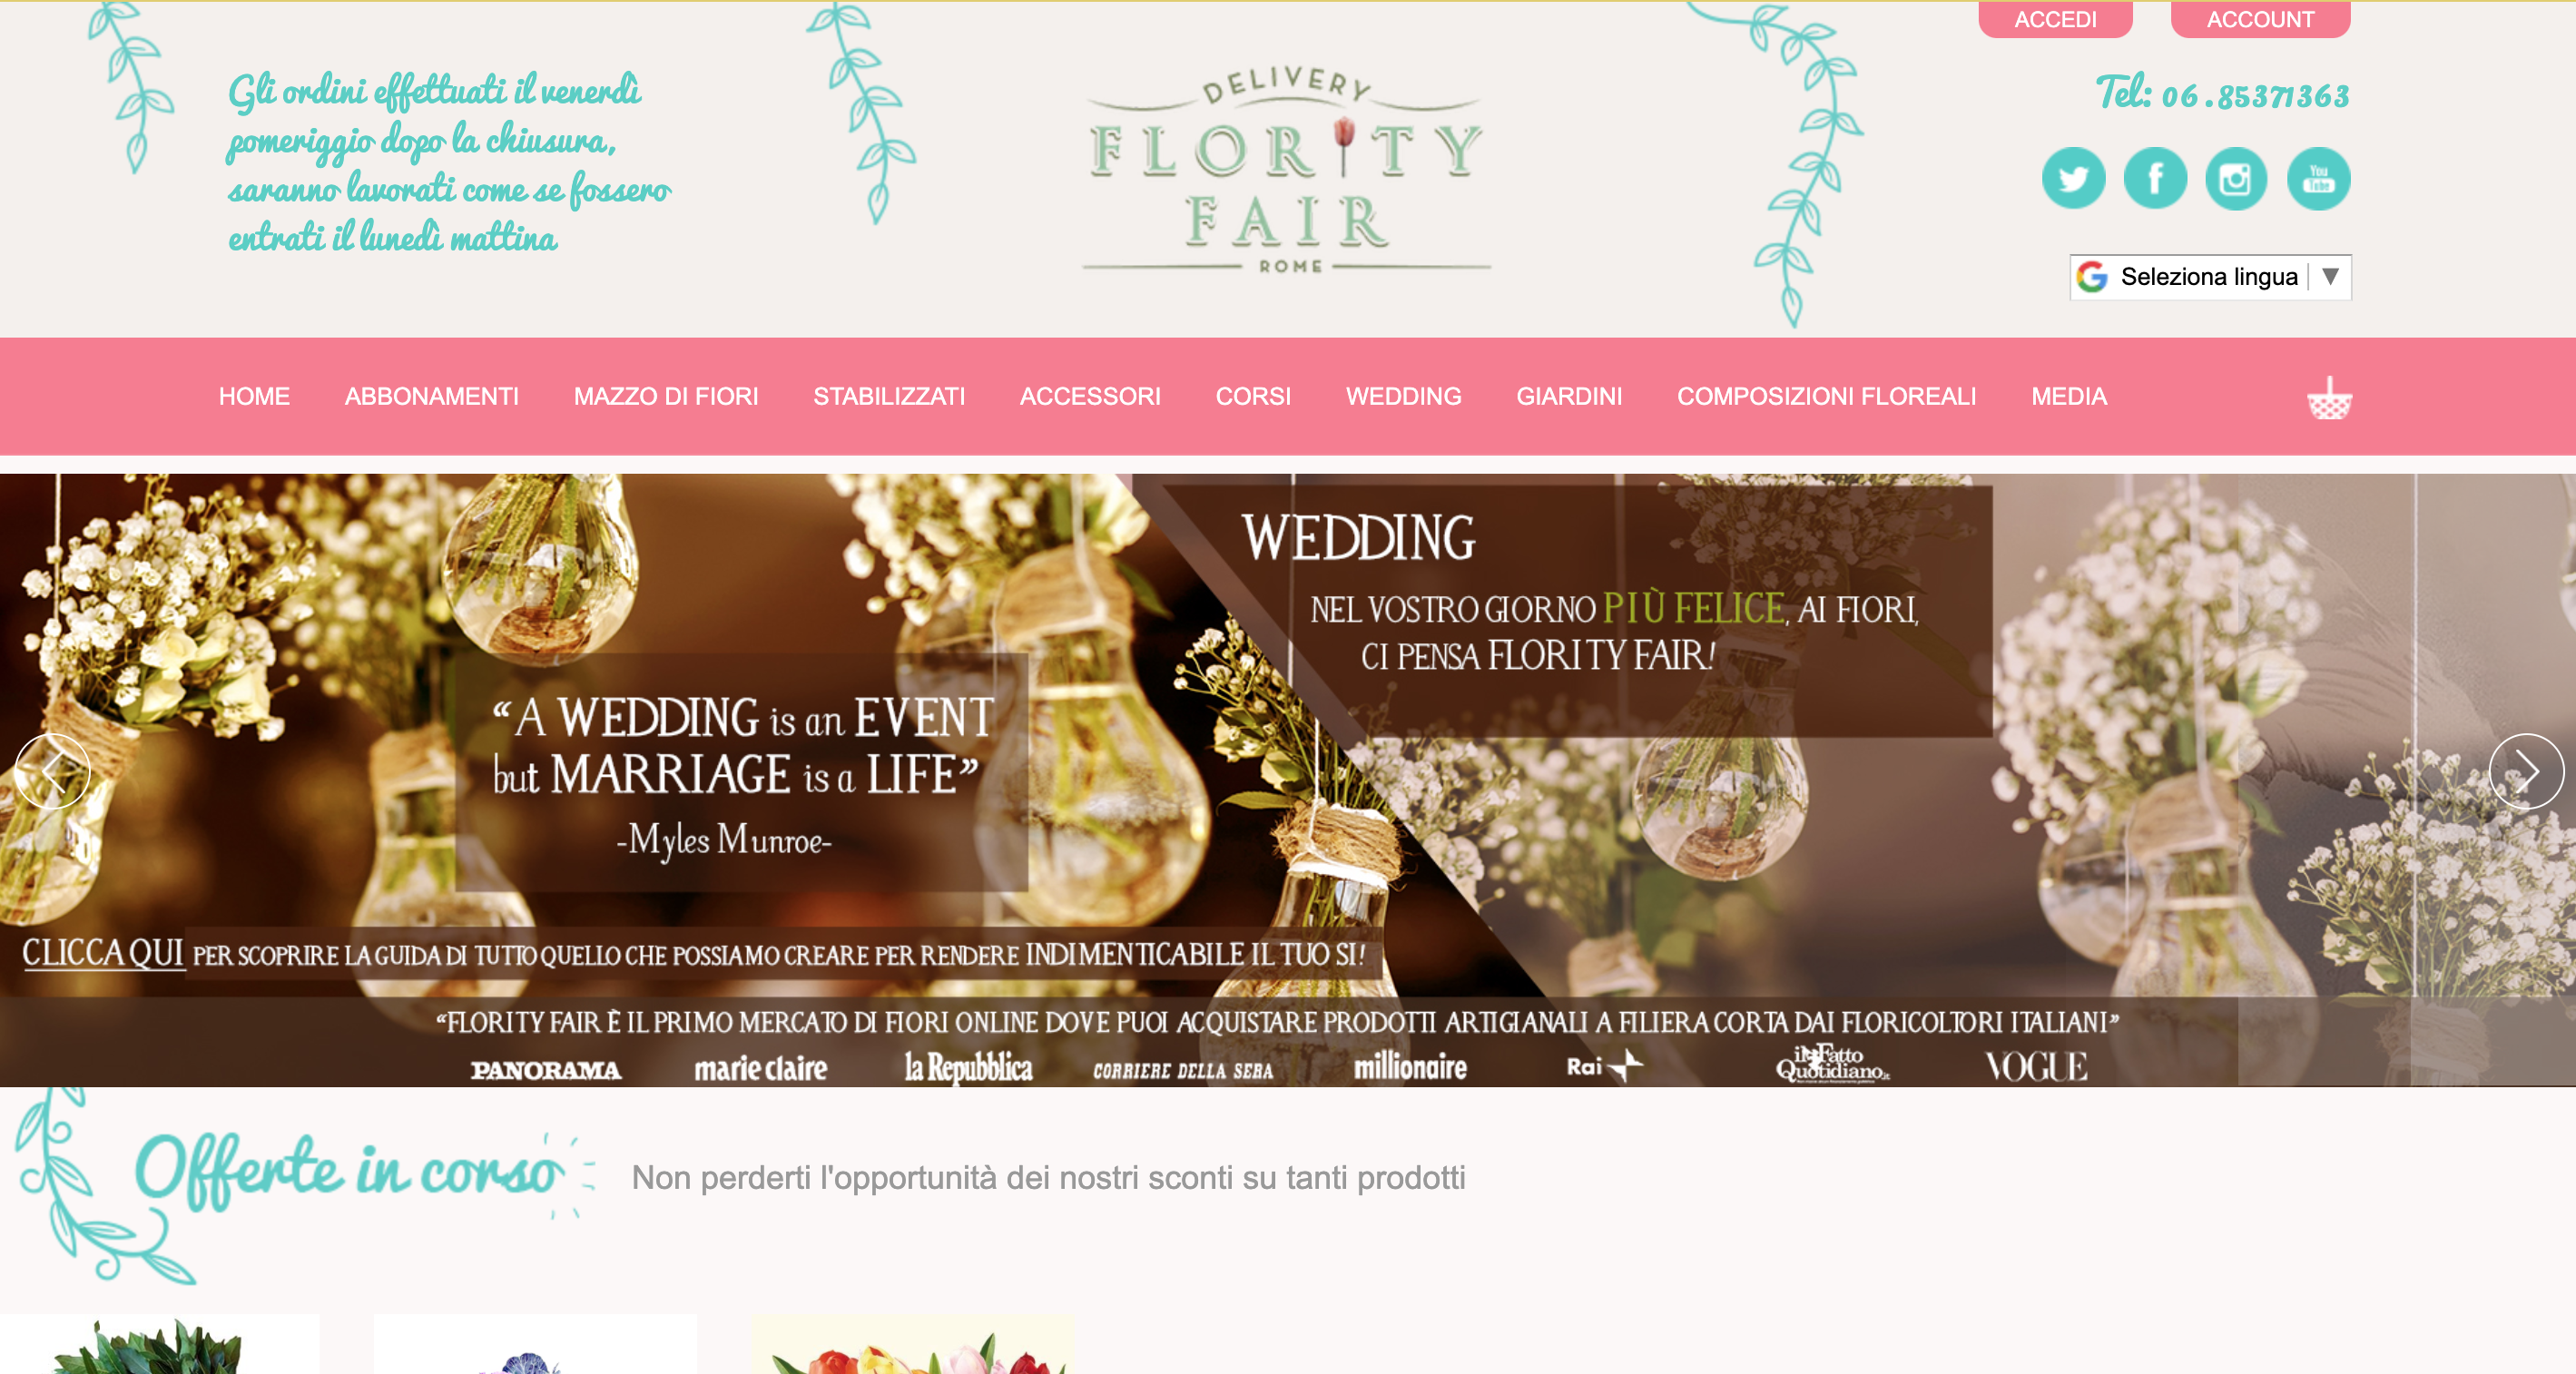 Flority Fair